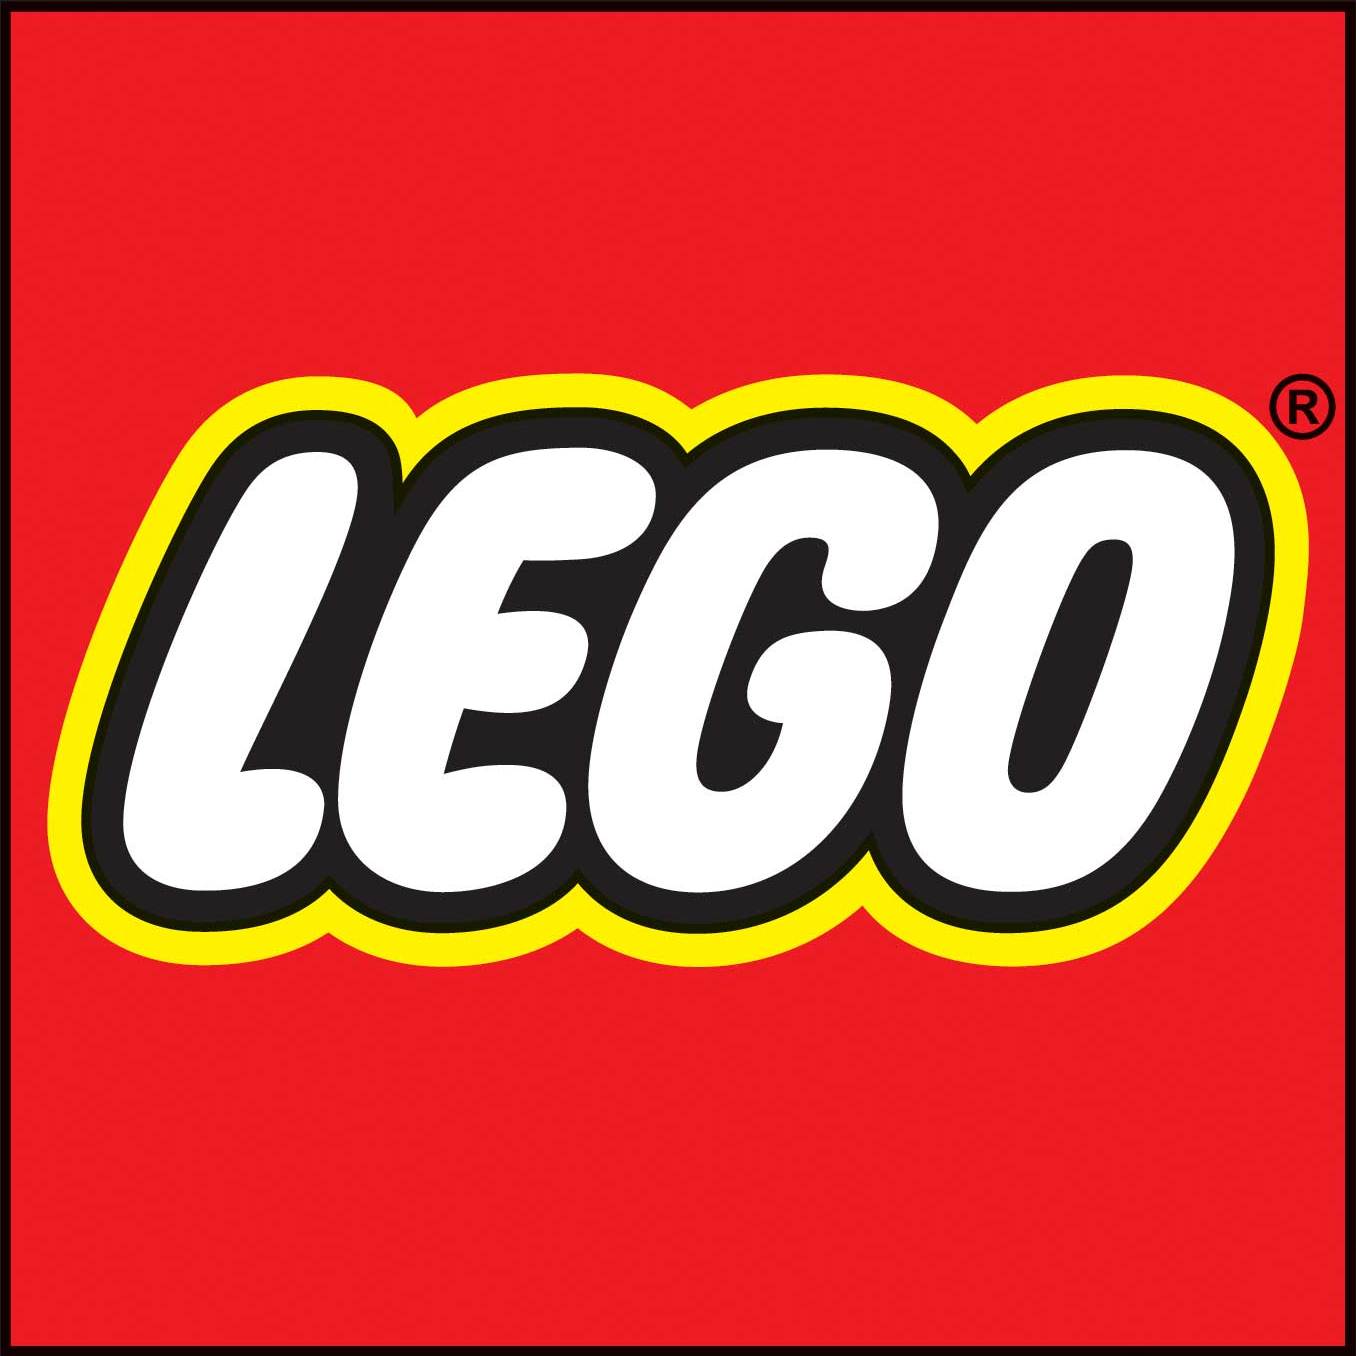 Lego logo clip art clipart - Cliparting.com